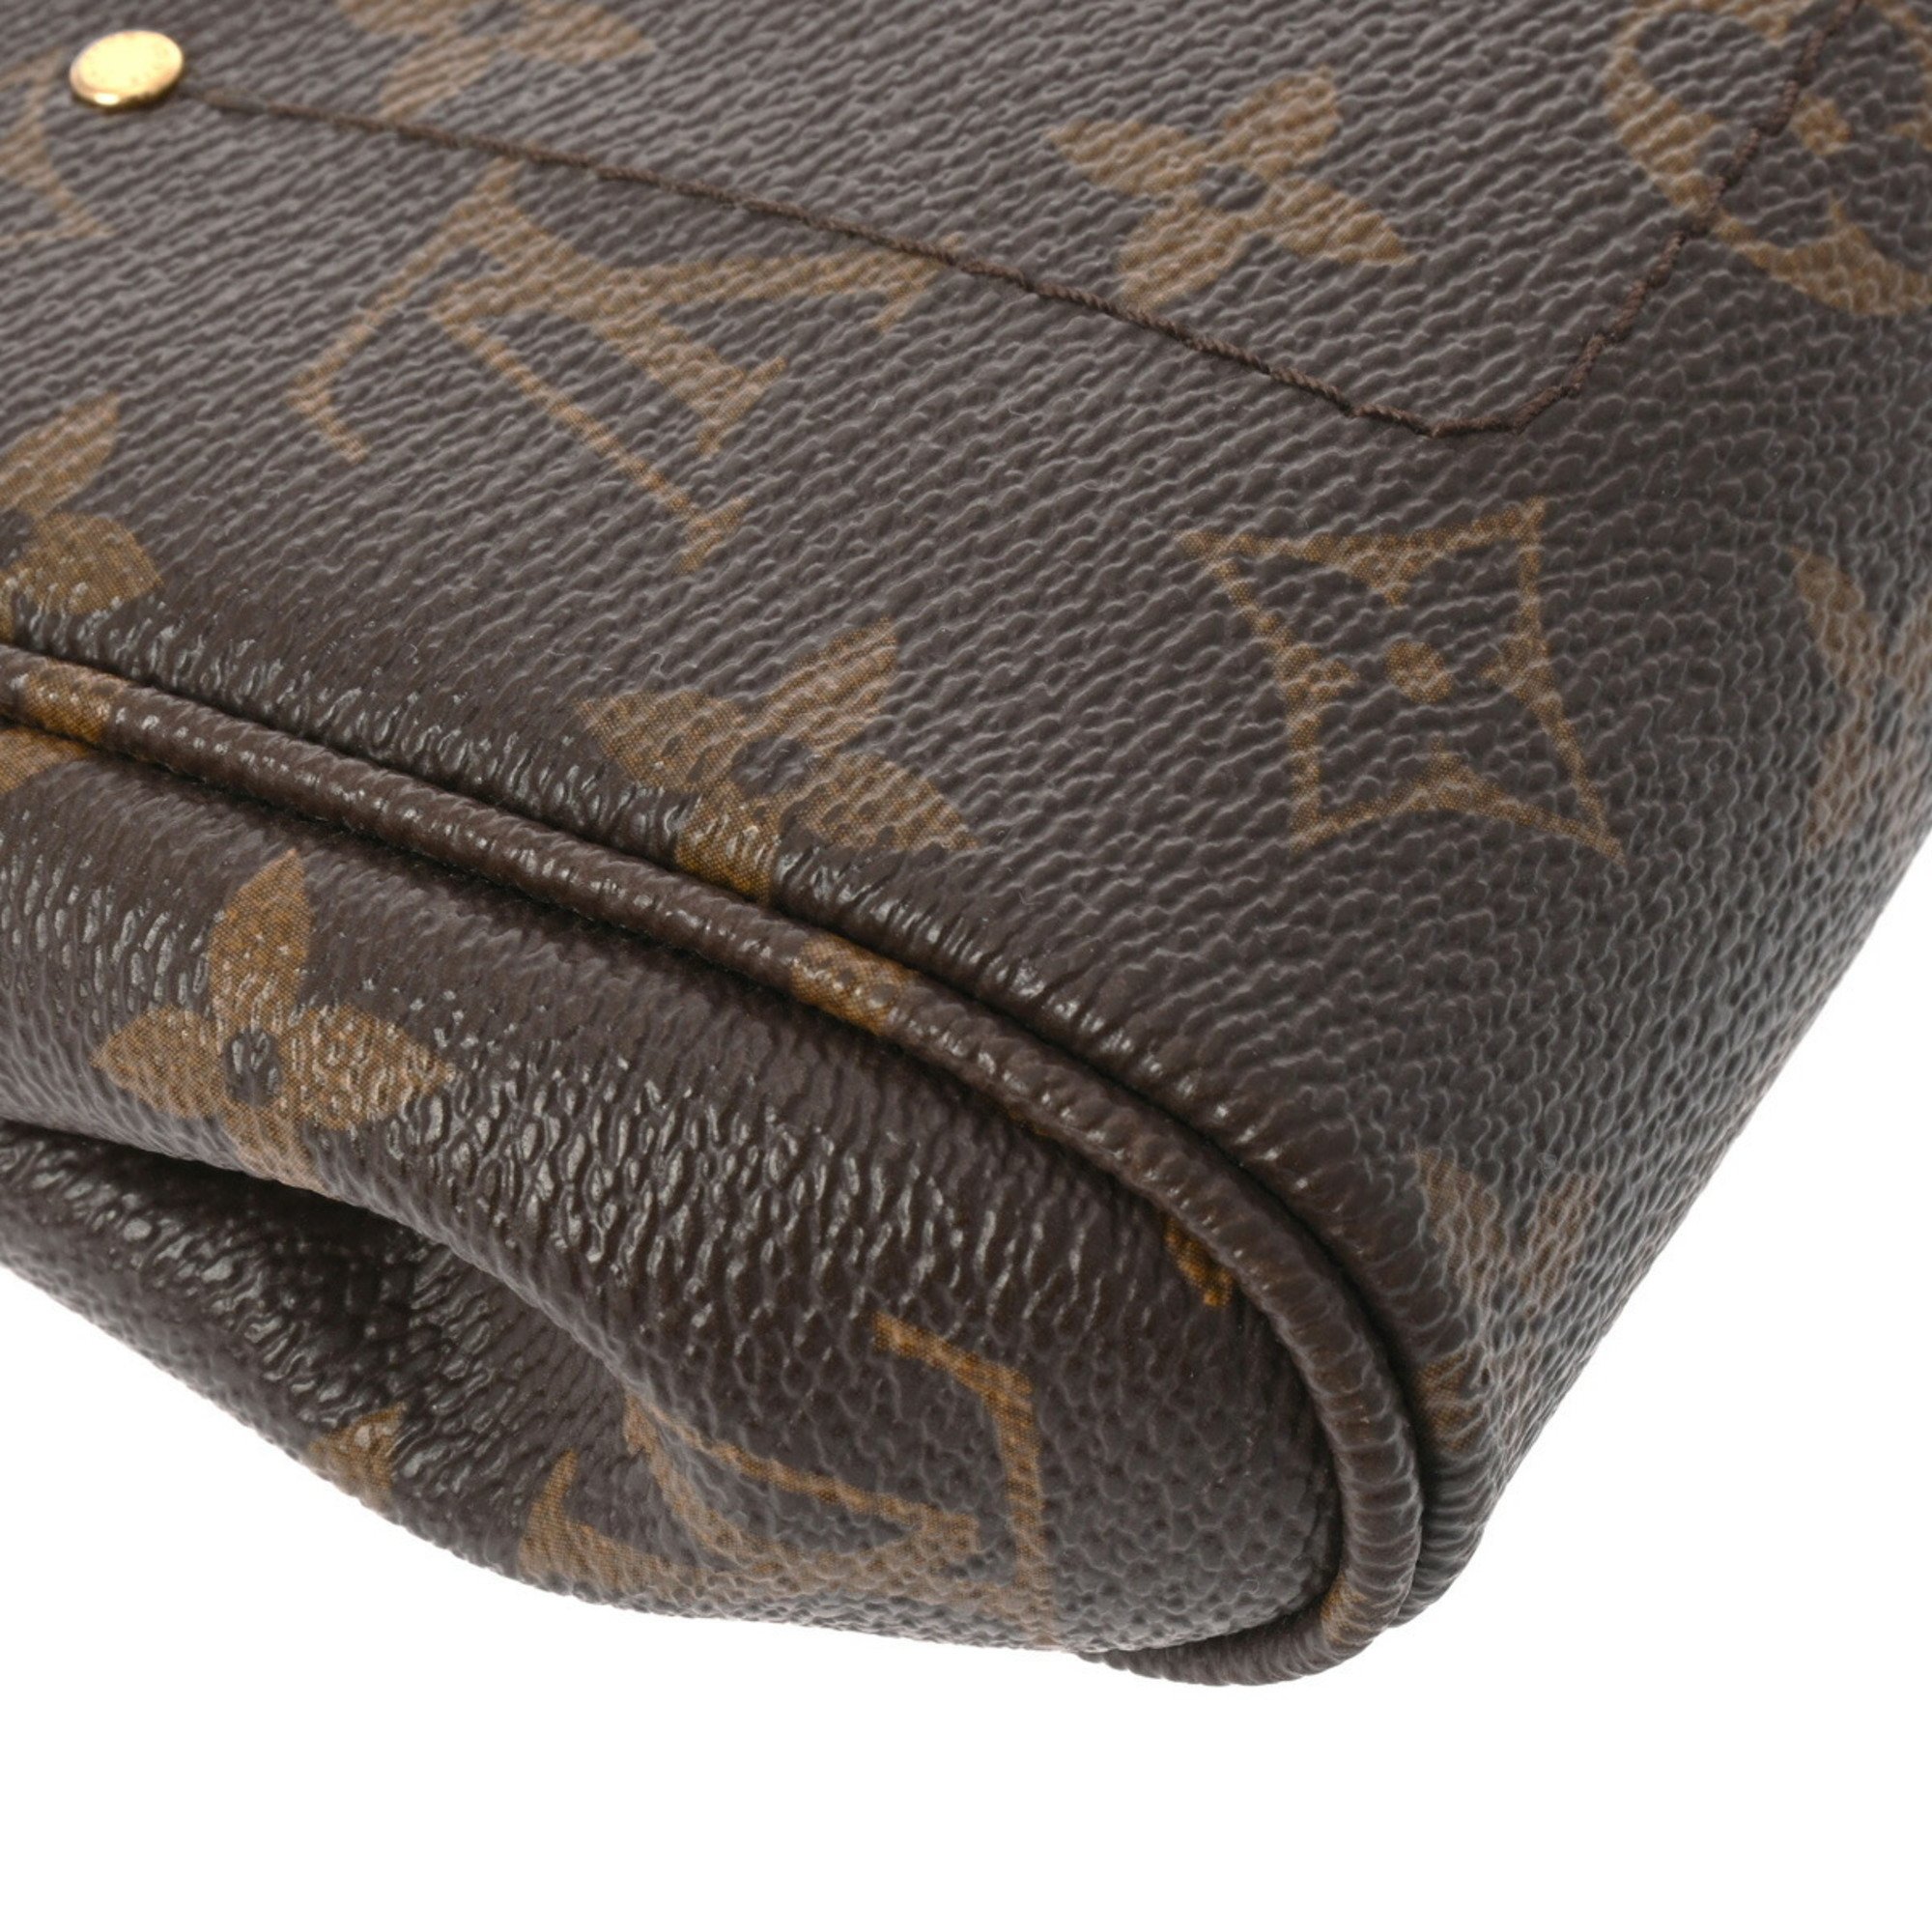 LOUIS VUITTON Louis Vuitton Monogram Favorite PM Brown M40717 Women's Canvas Shoulder Bag